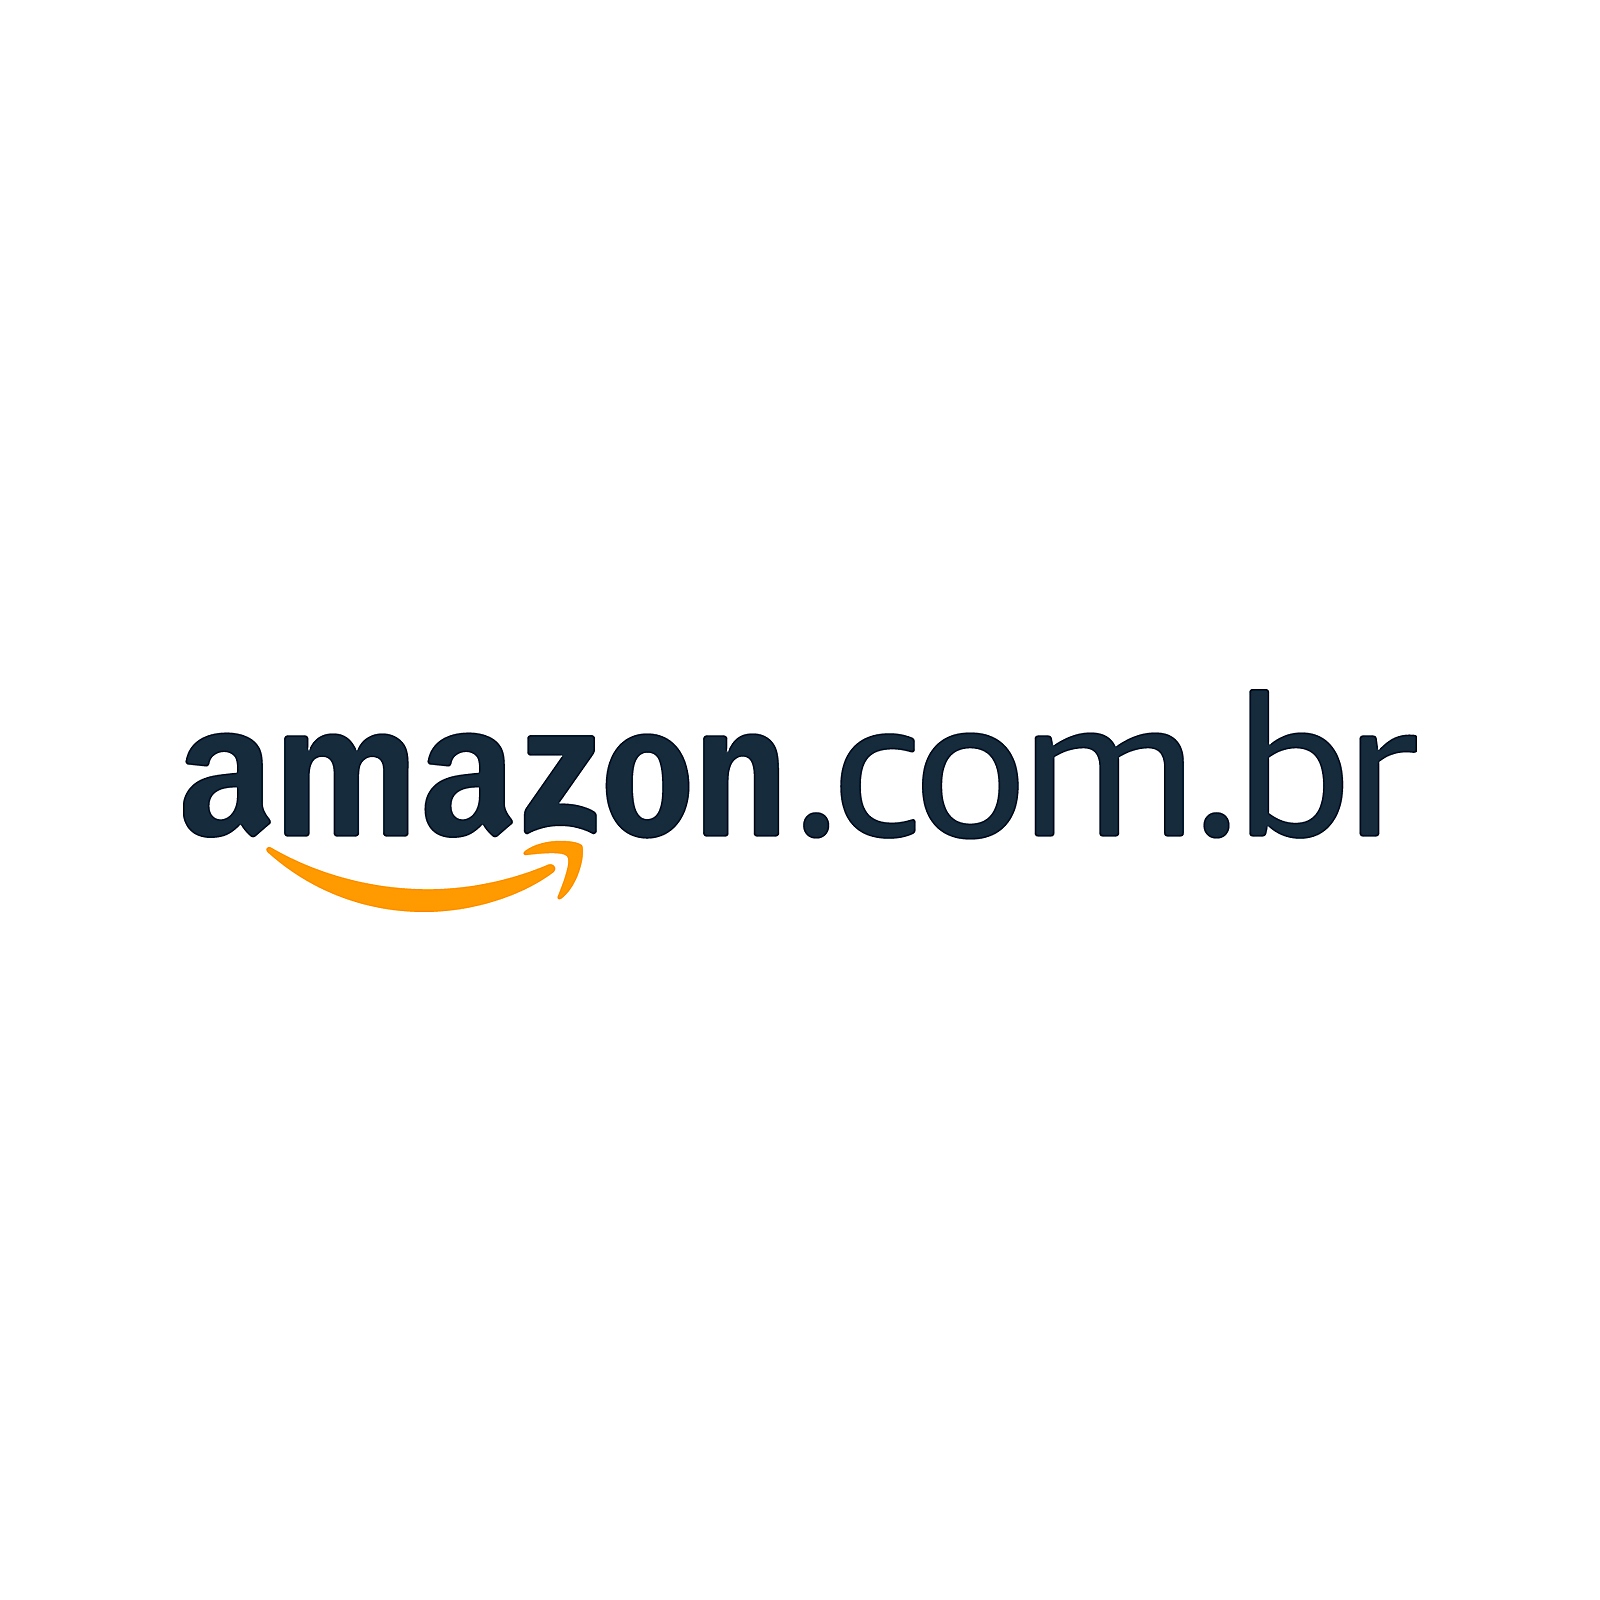 Varejista Brasil Midia Fisica - Amazon